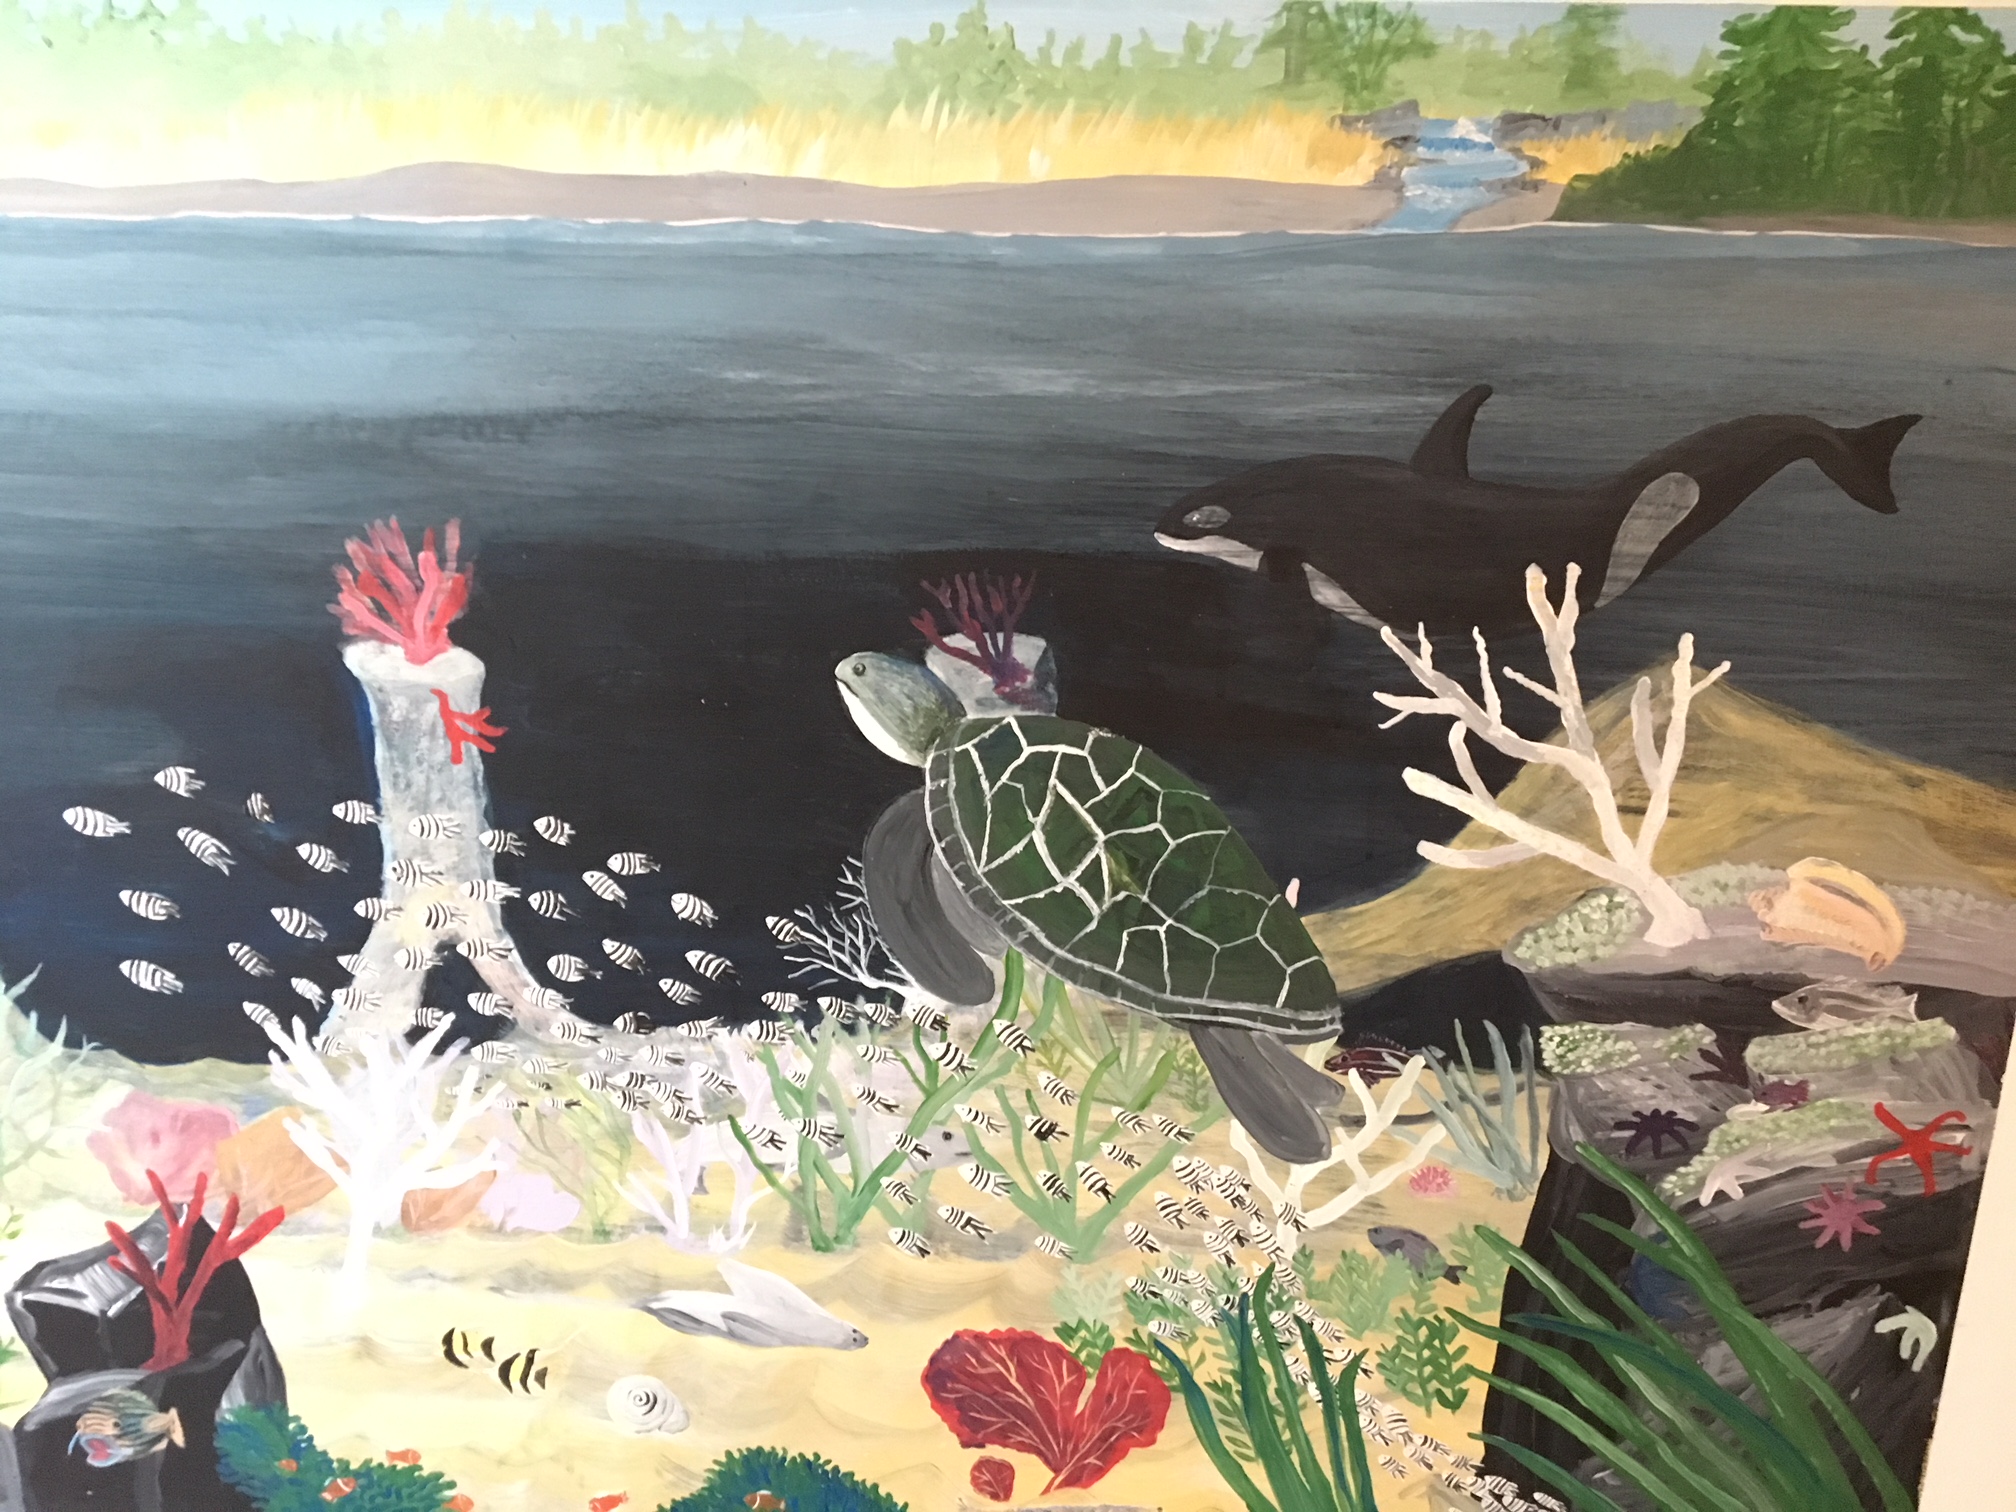 a mural of ocean marine life